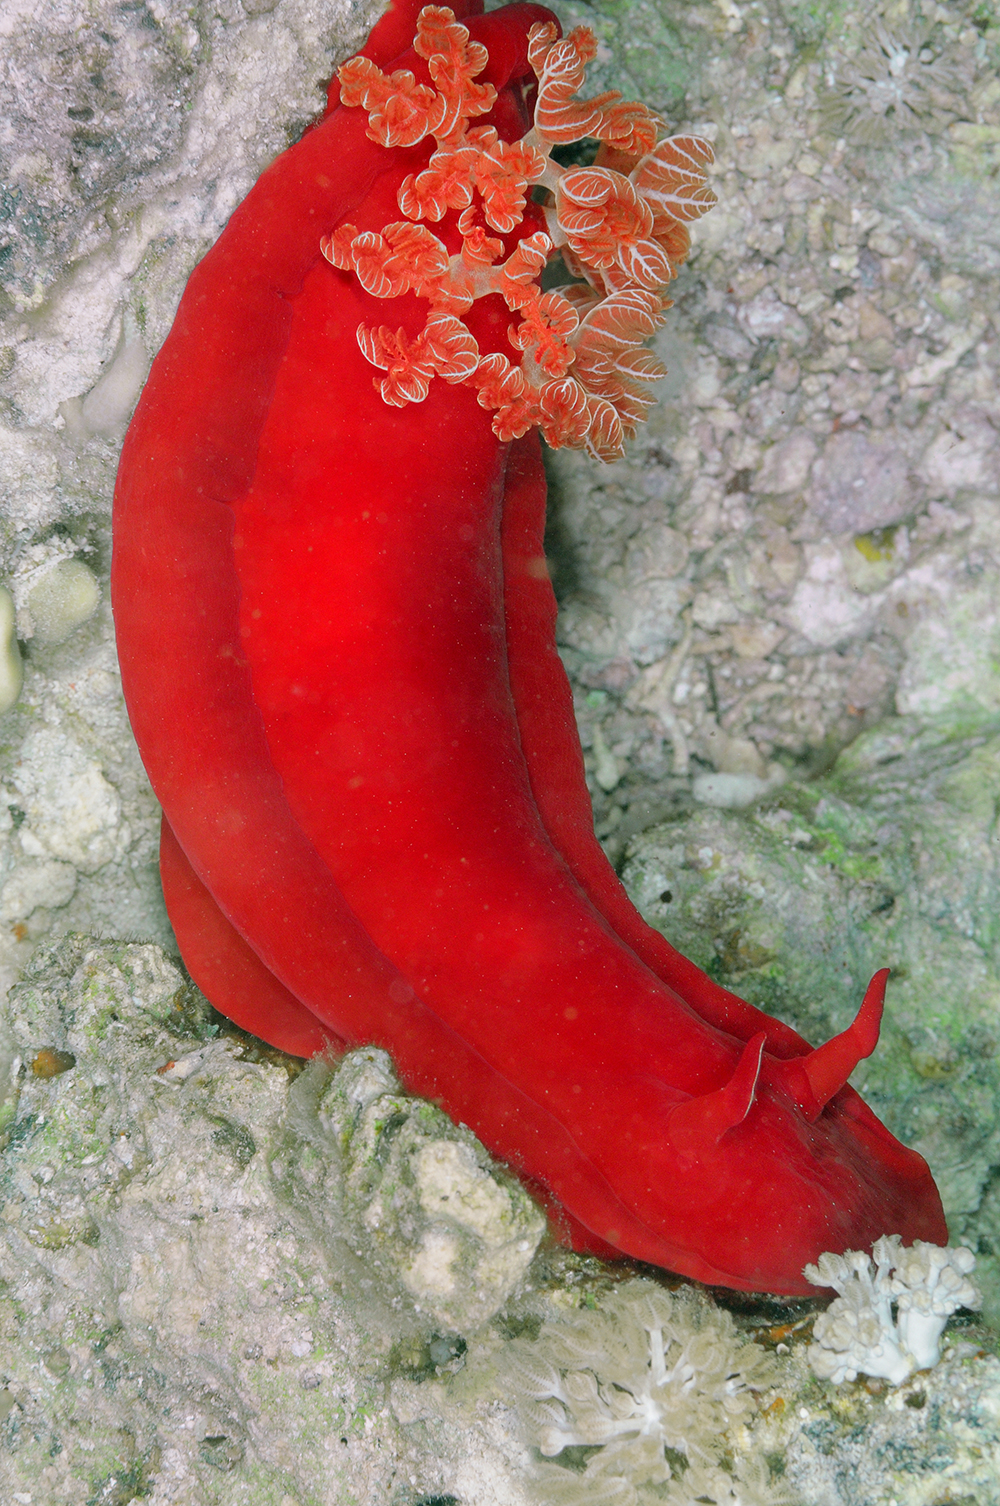 Spanish Dancer nudibranch